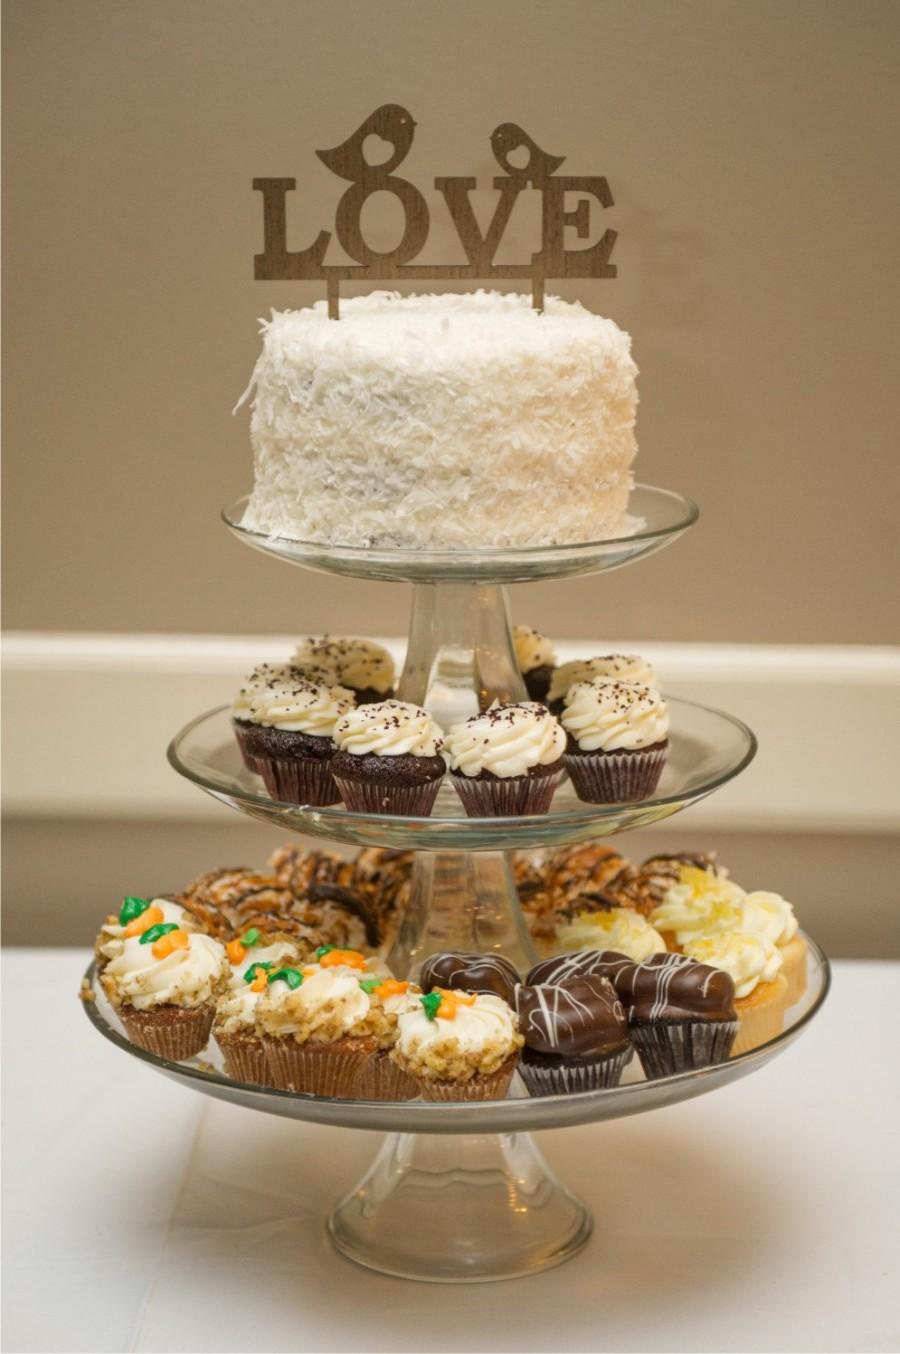 Hochzeit - wedding cake topper birds - wedding cake topper rustic -wedding cake topper wood - wedding cake topper wooden - cake topper love bird